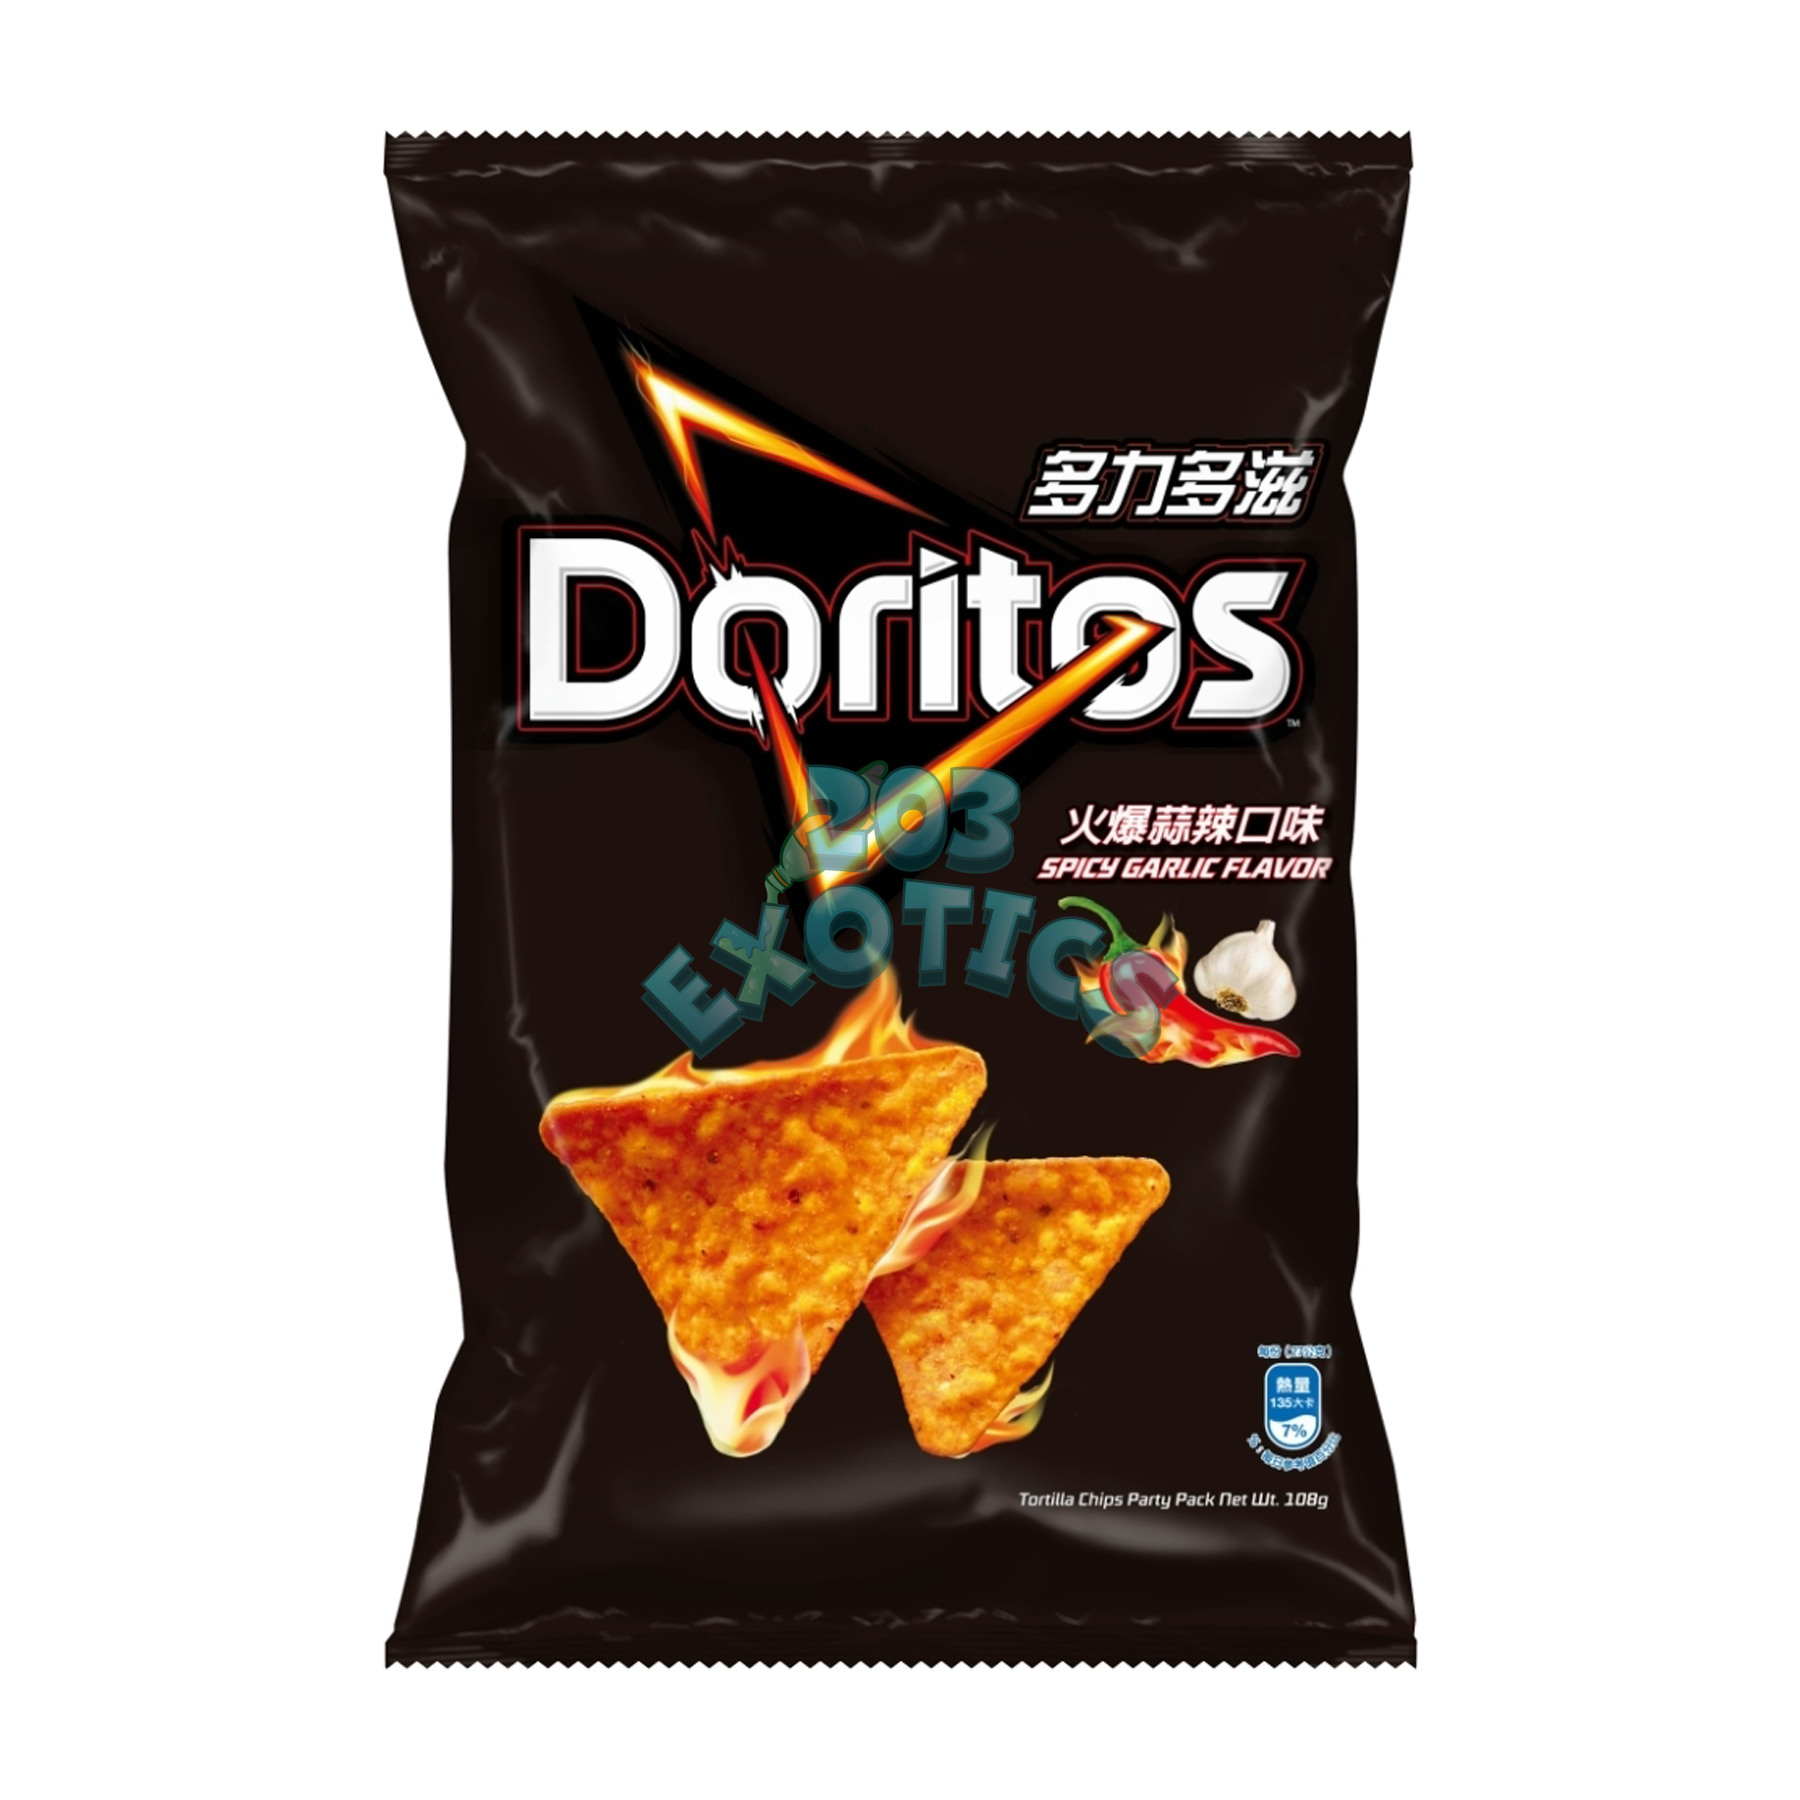 Doritos Spicy Garlic Flavored Chips 48G